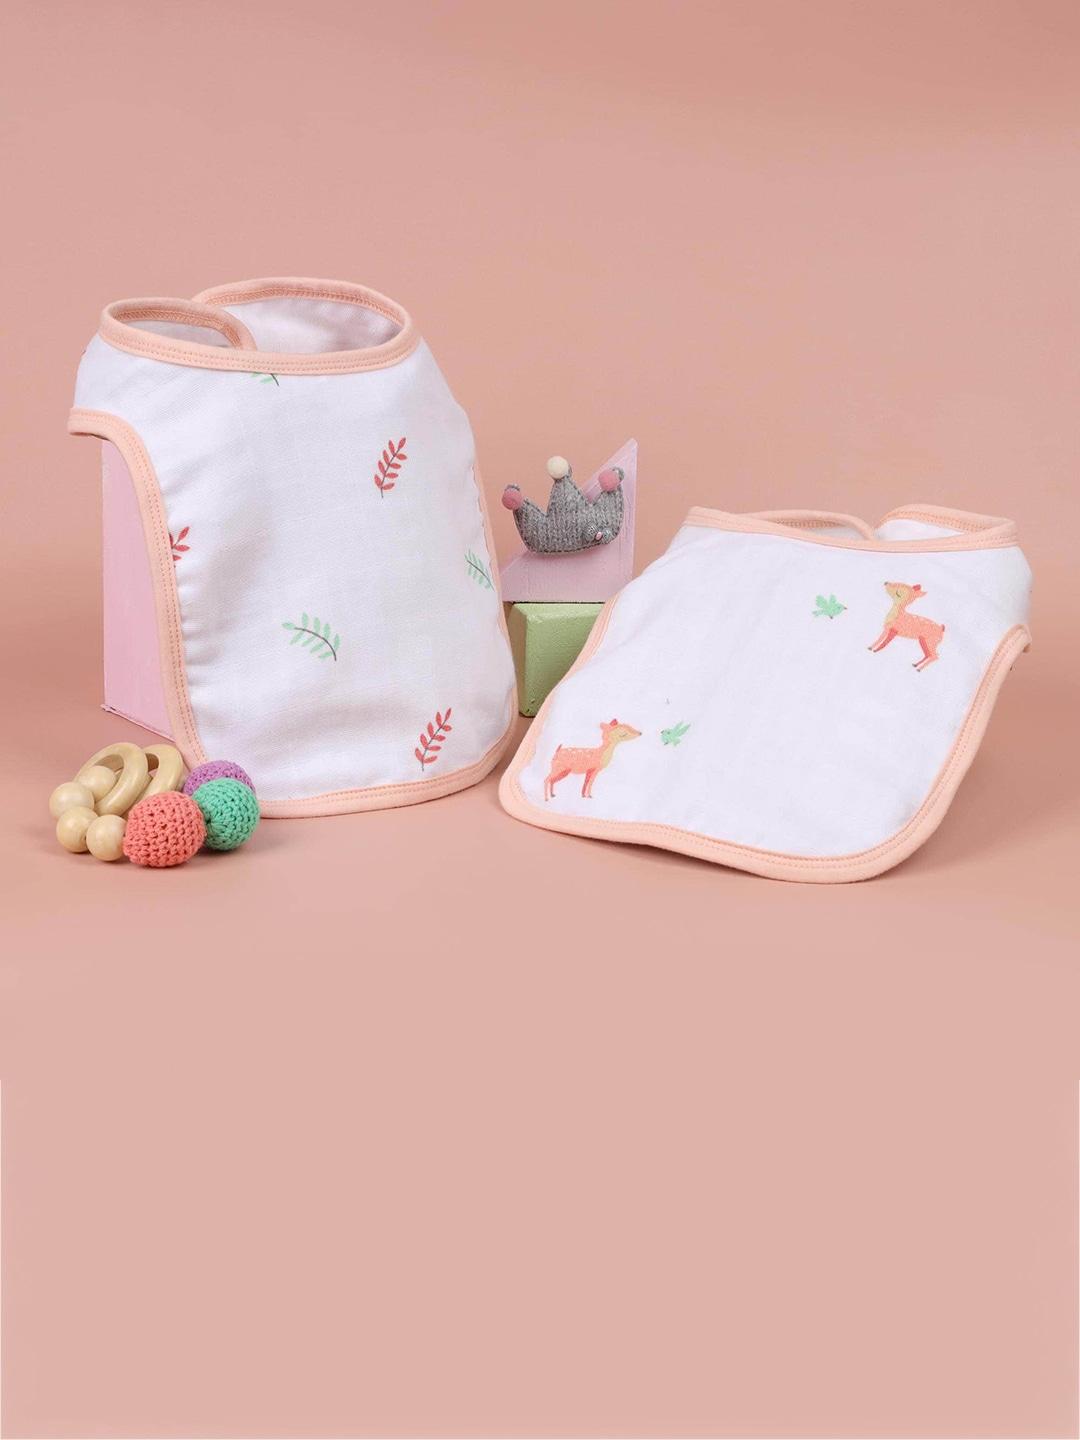 kicks & crawl kids pack of 2 white & peach printed organic cotton round bibs